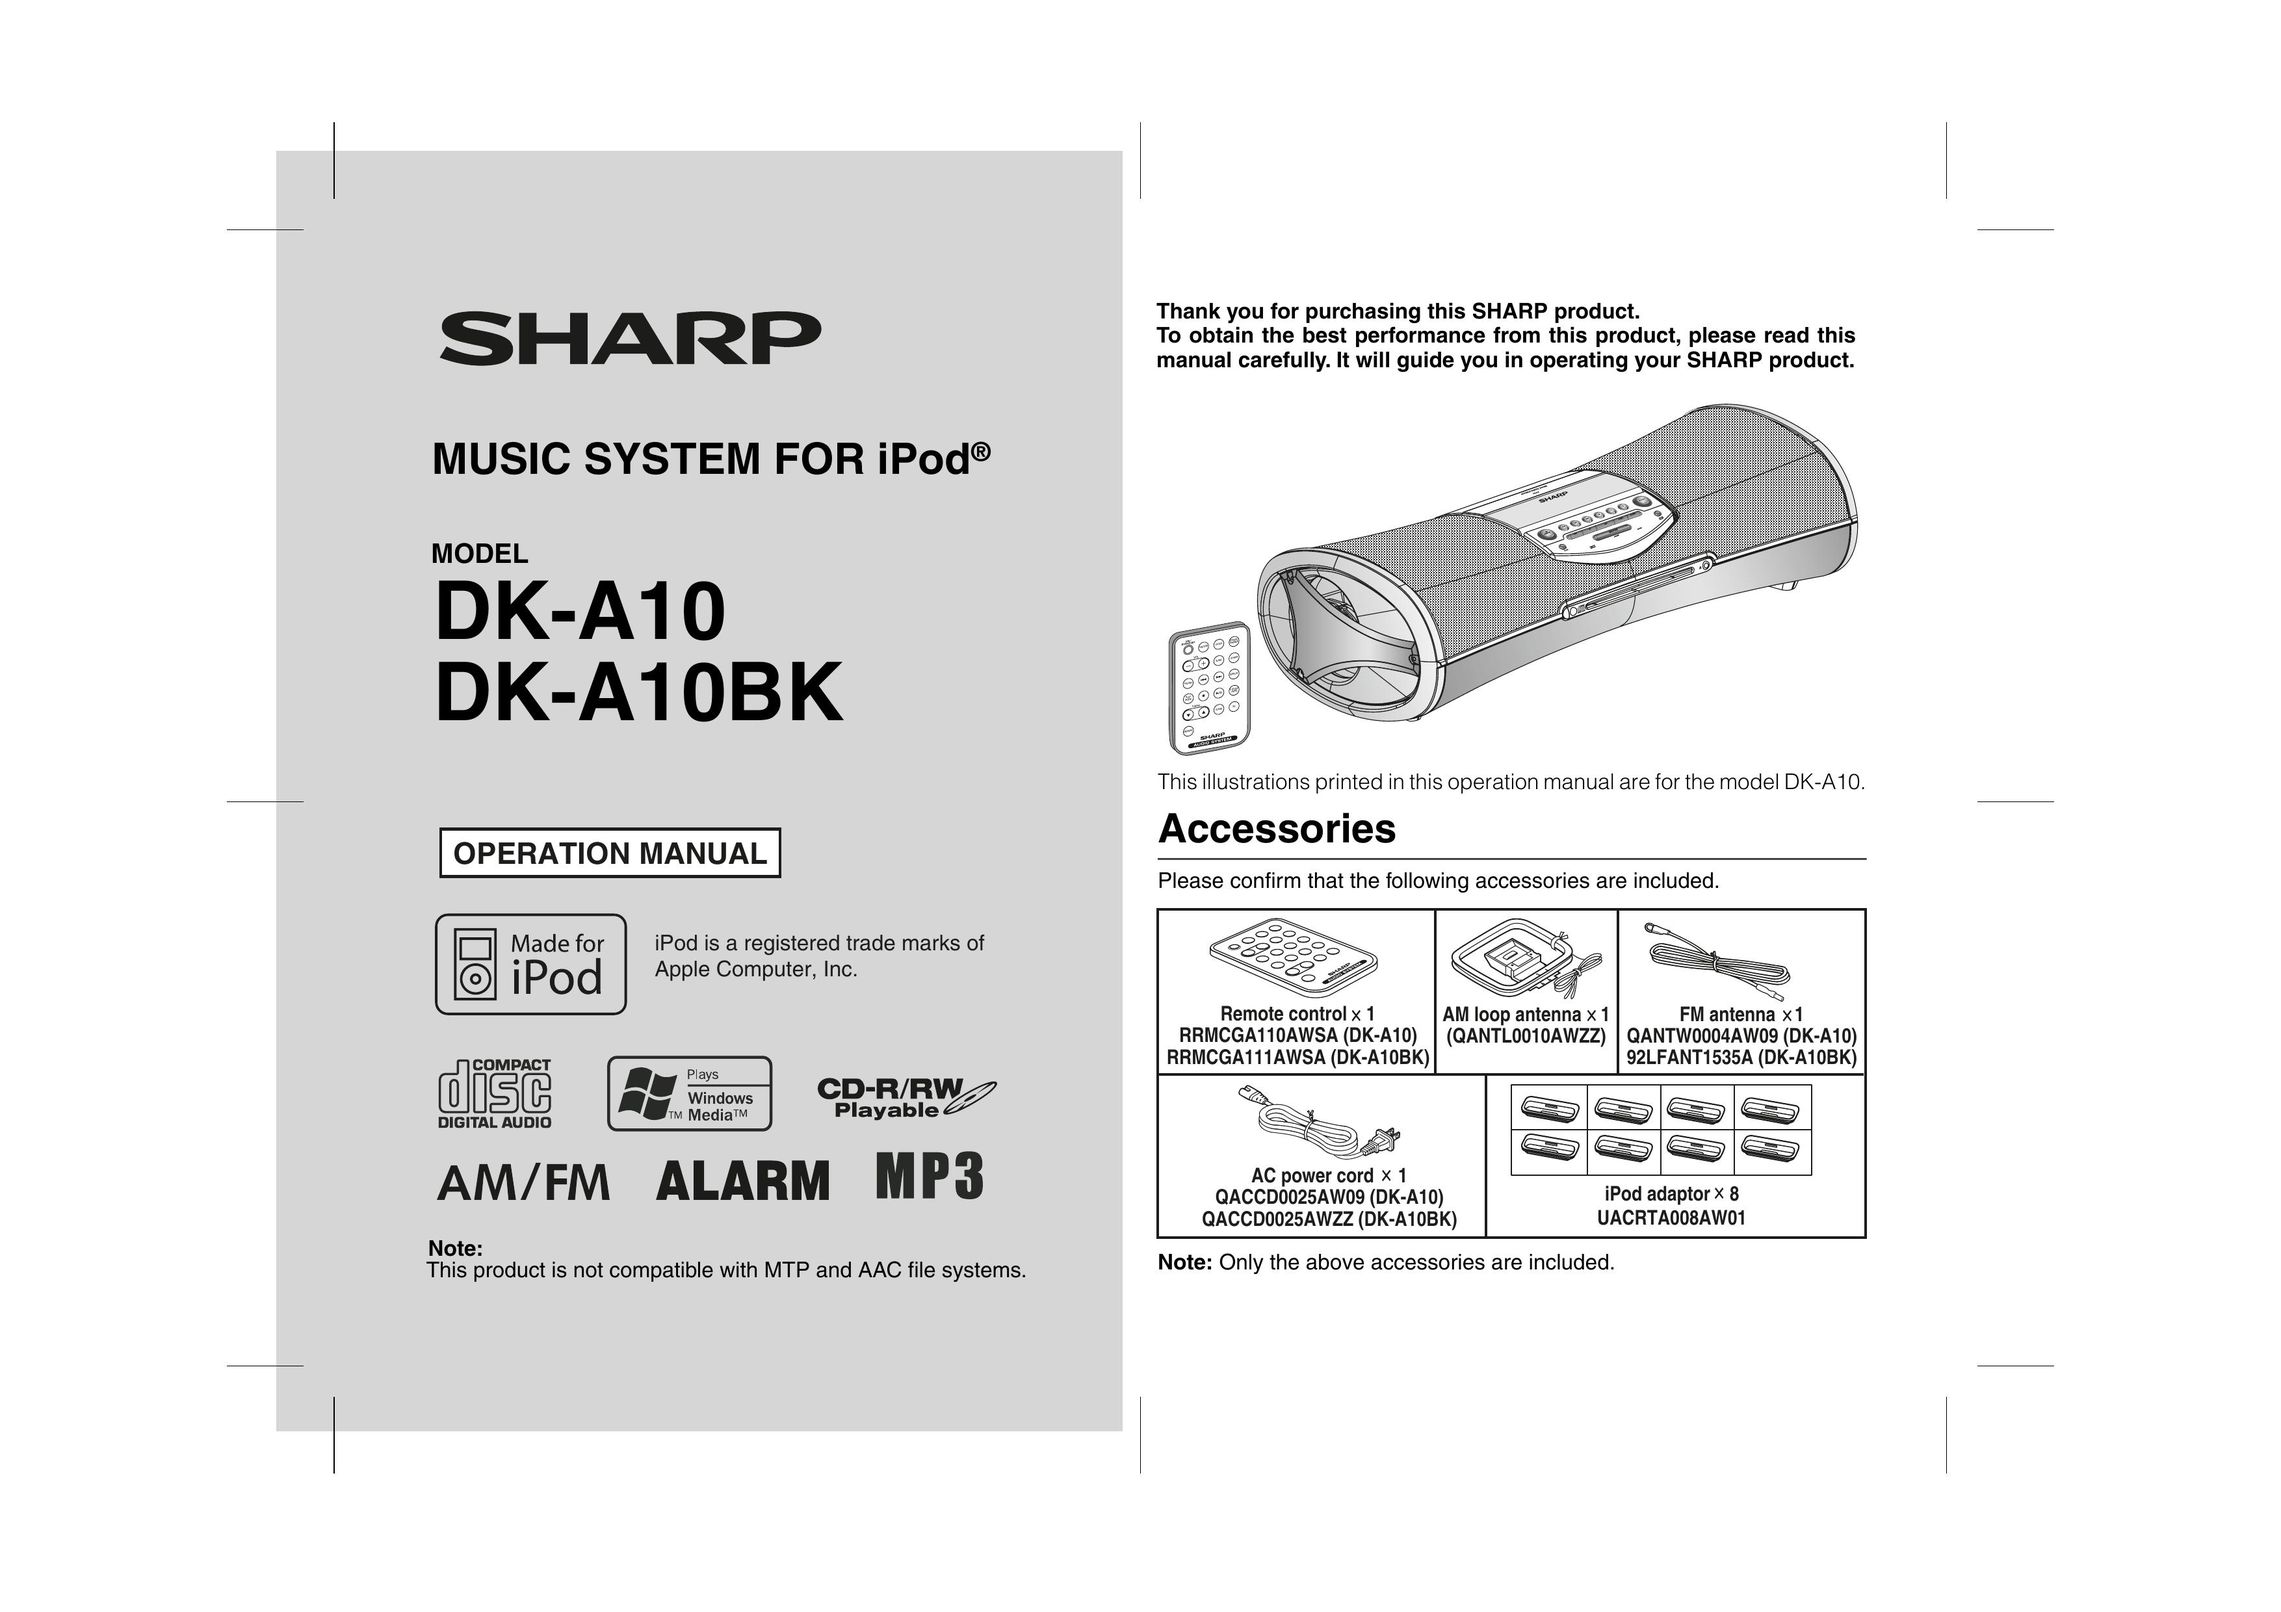 Sharp DK-A10BK MP3 Docking Station User Manual